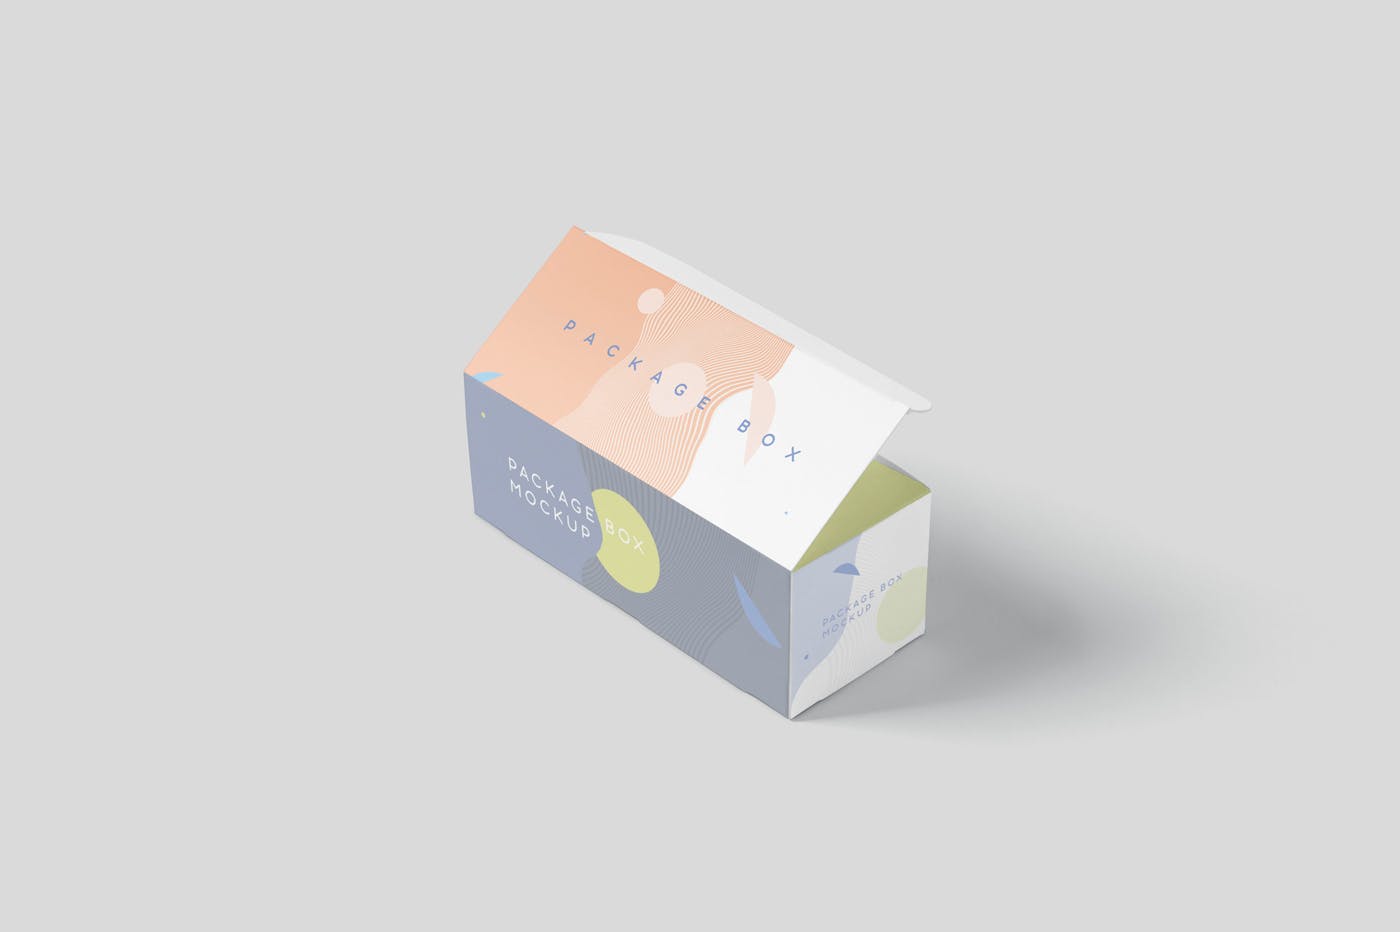 宽矩形包装盒外观设计效果图素材中国精选 Package Box Mock-Up Set – Wide Rectangle插图(5)